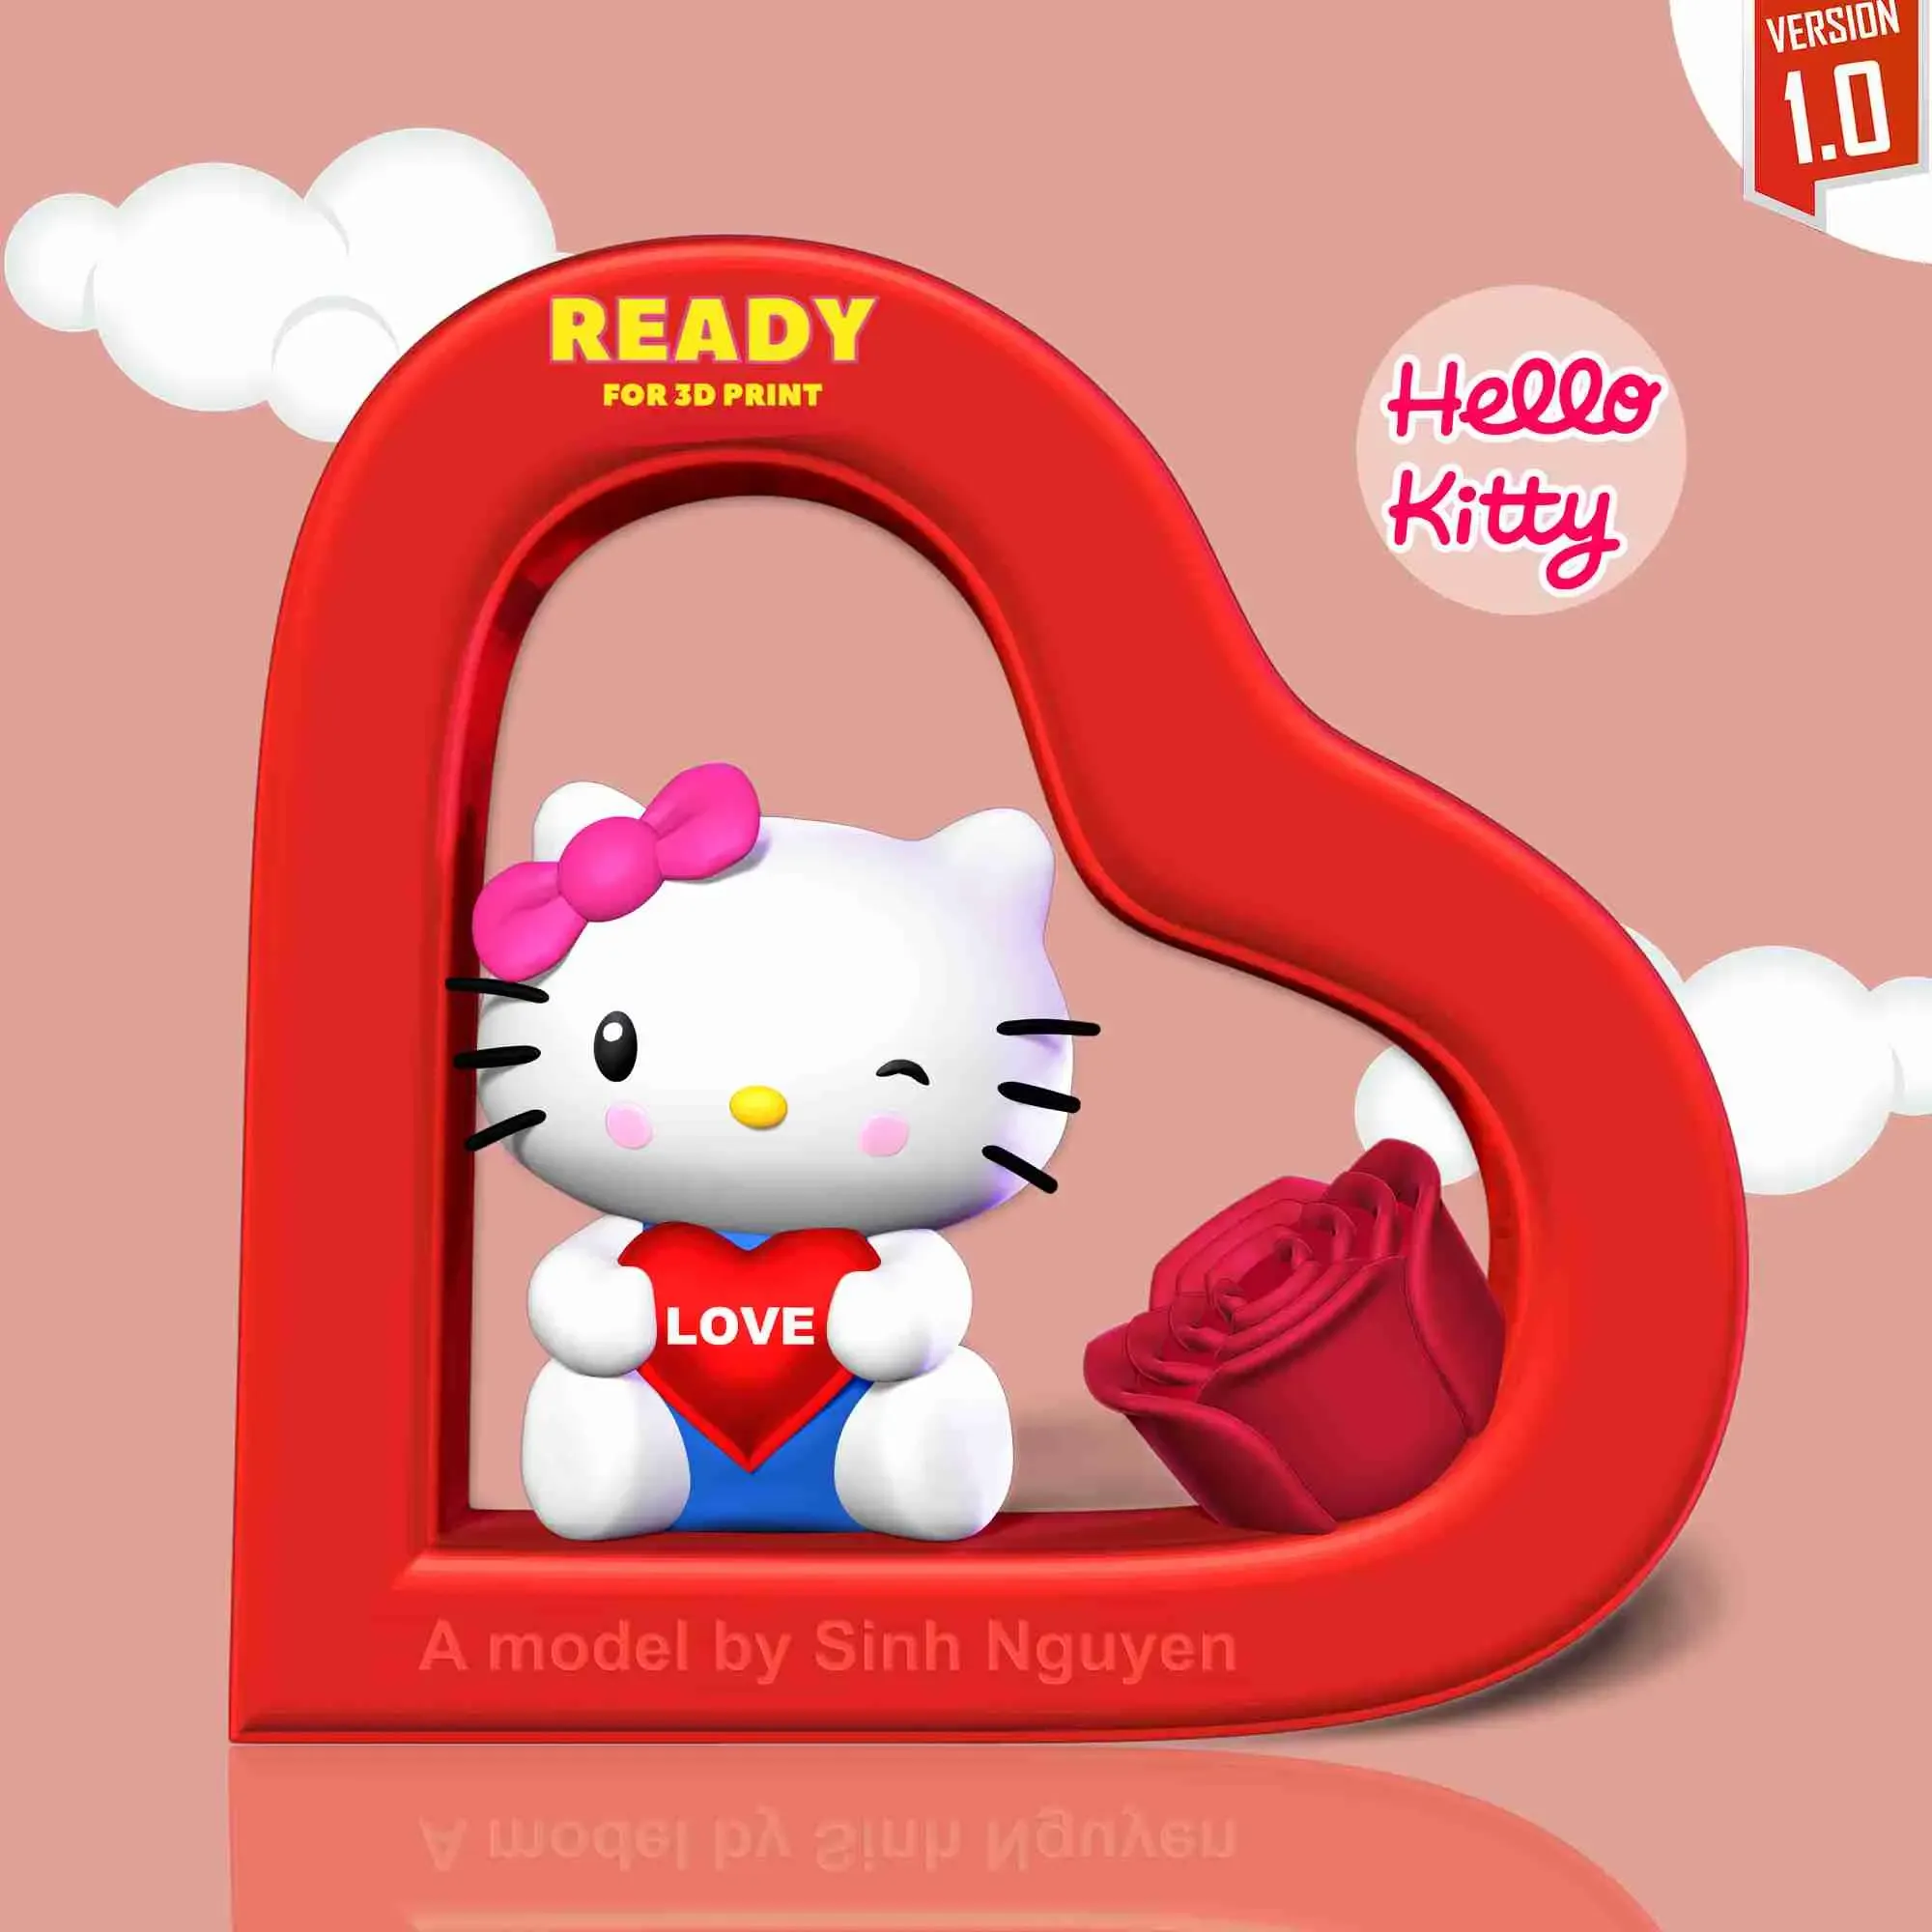 Hello Kitty - Valentine